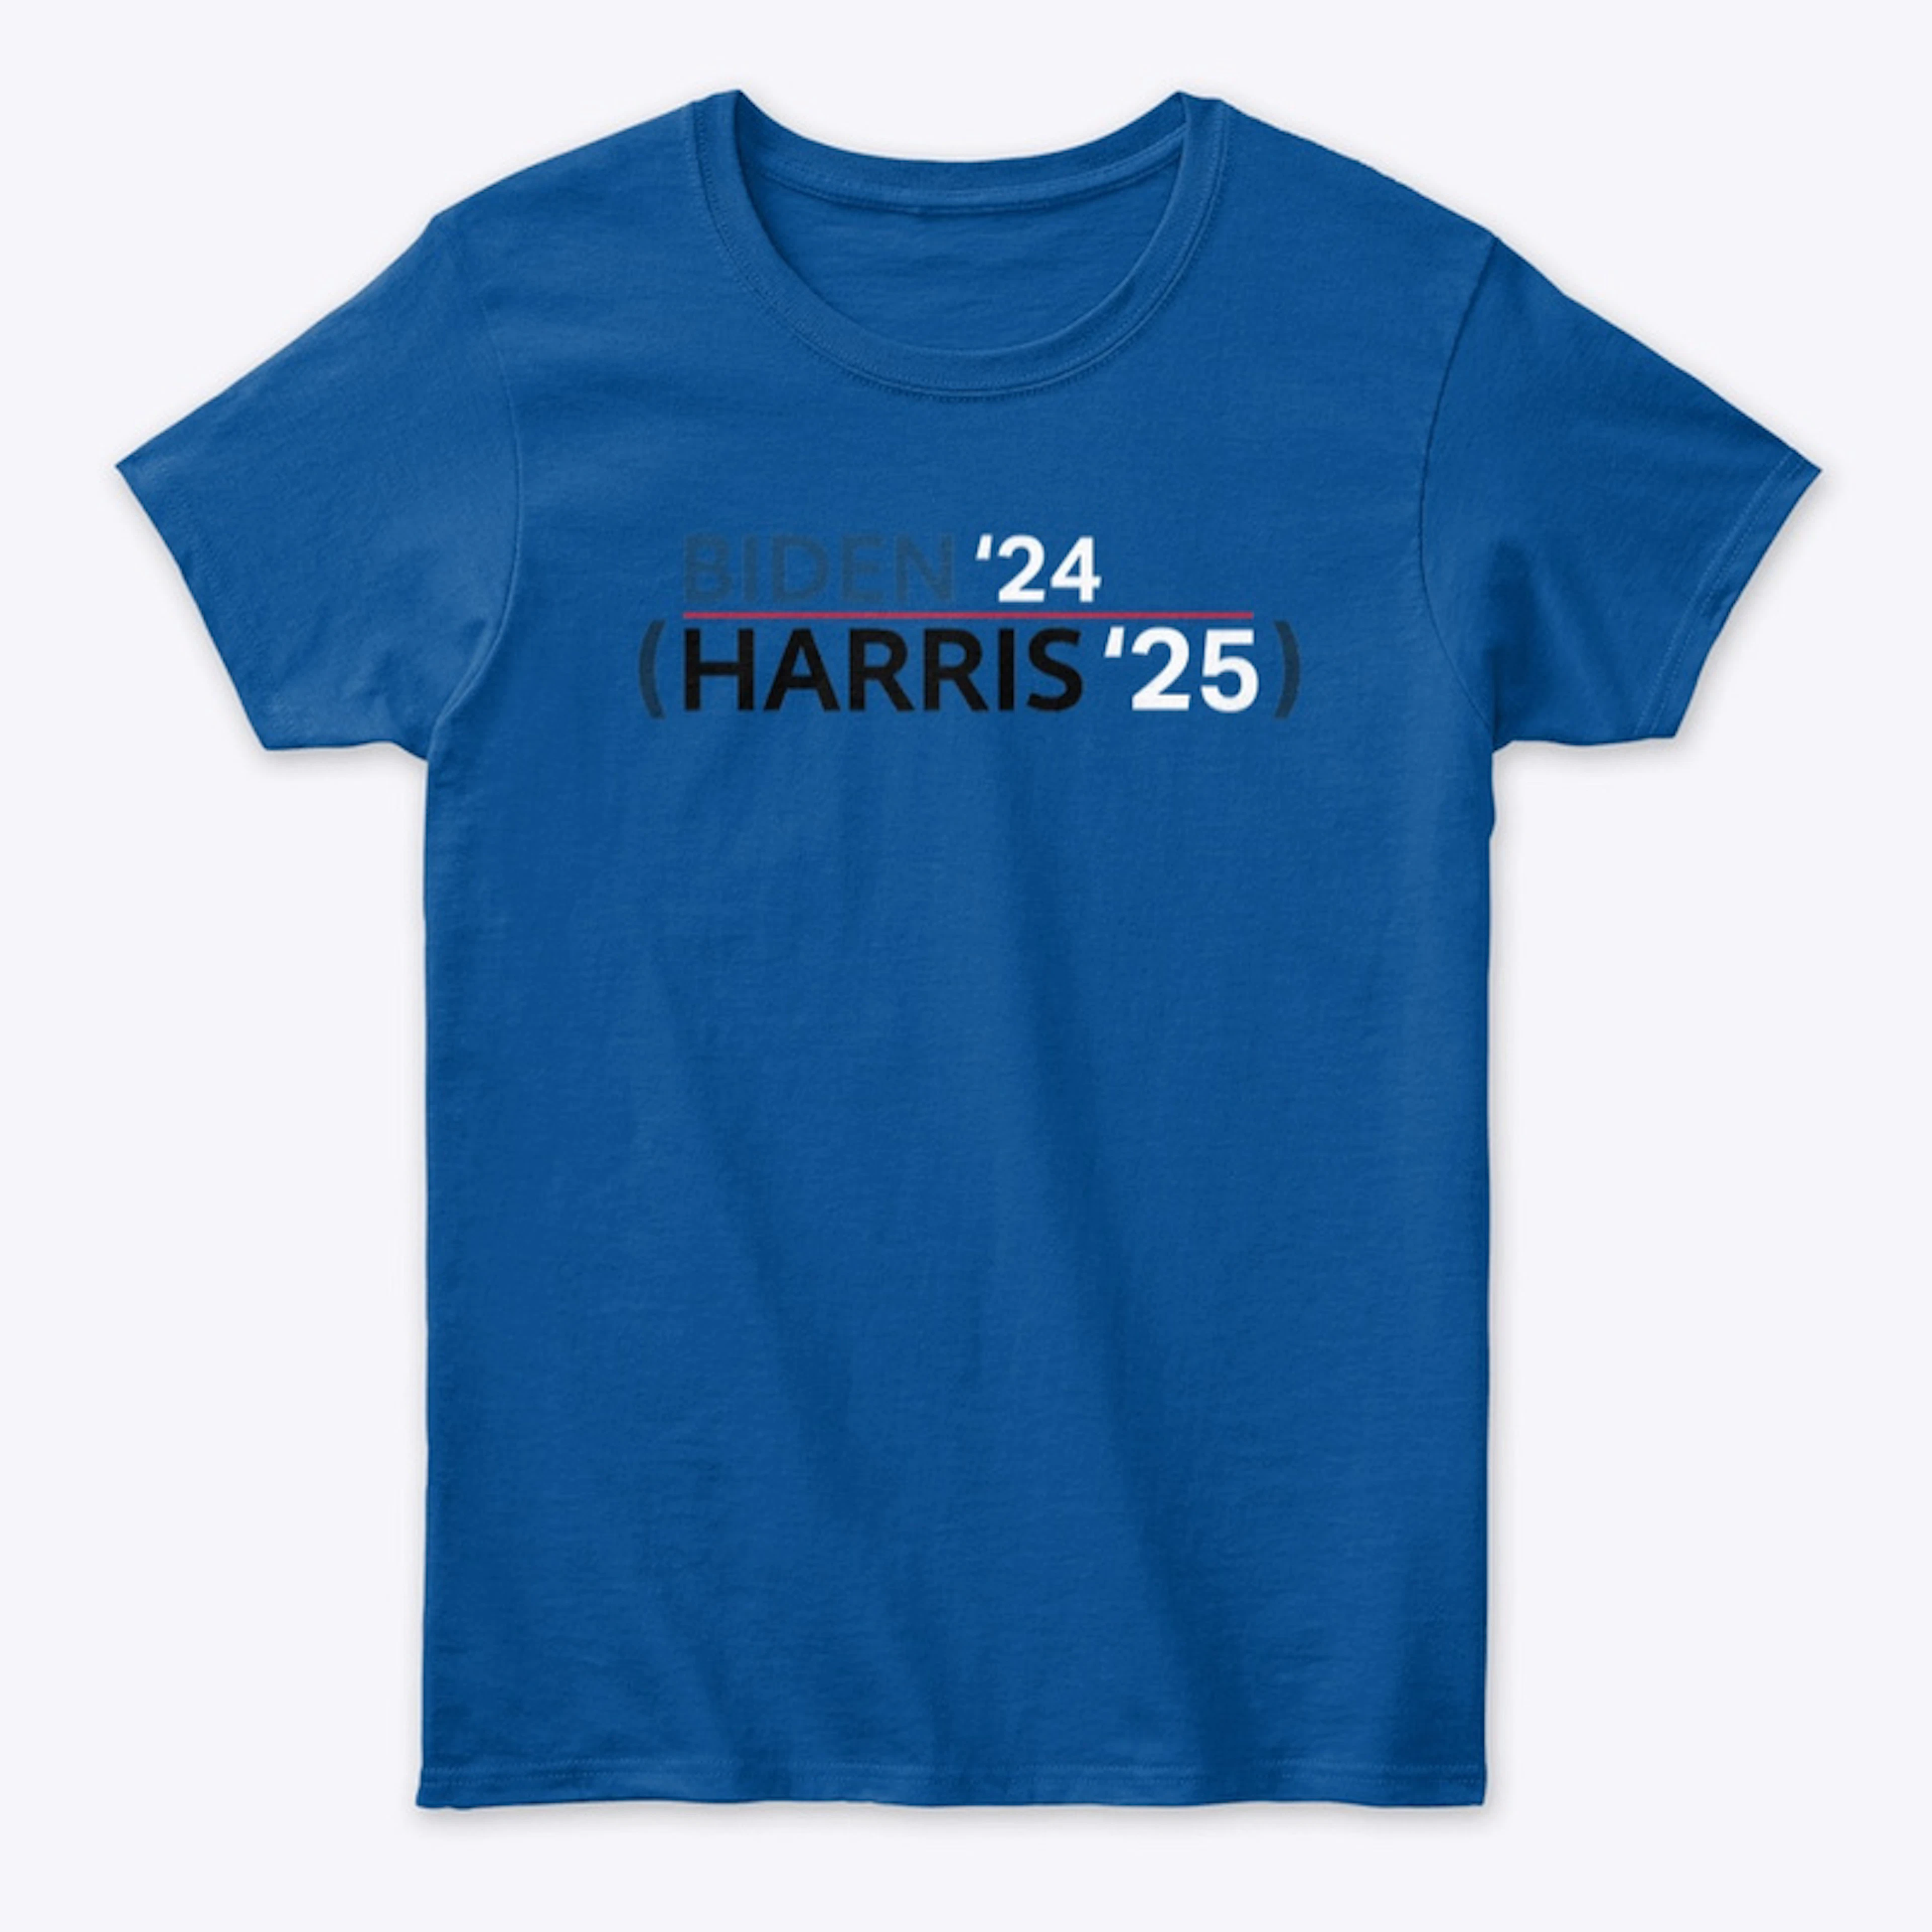 Biden '24 / Harris '25